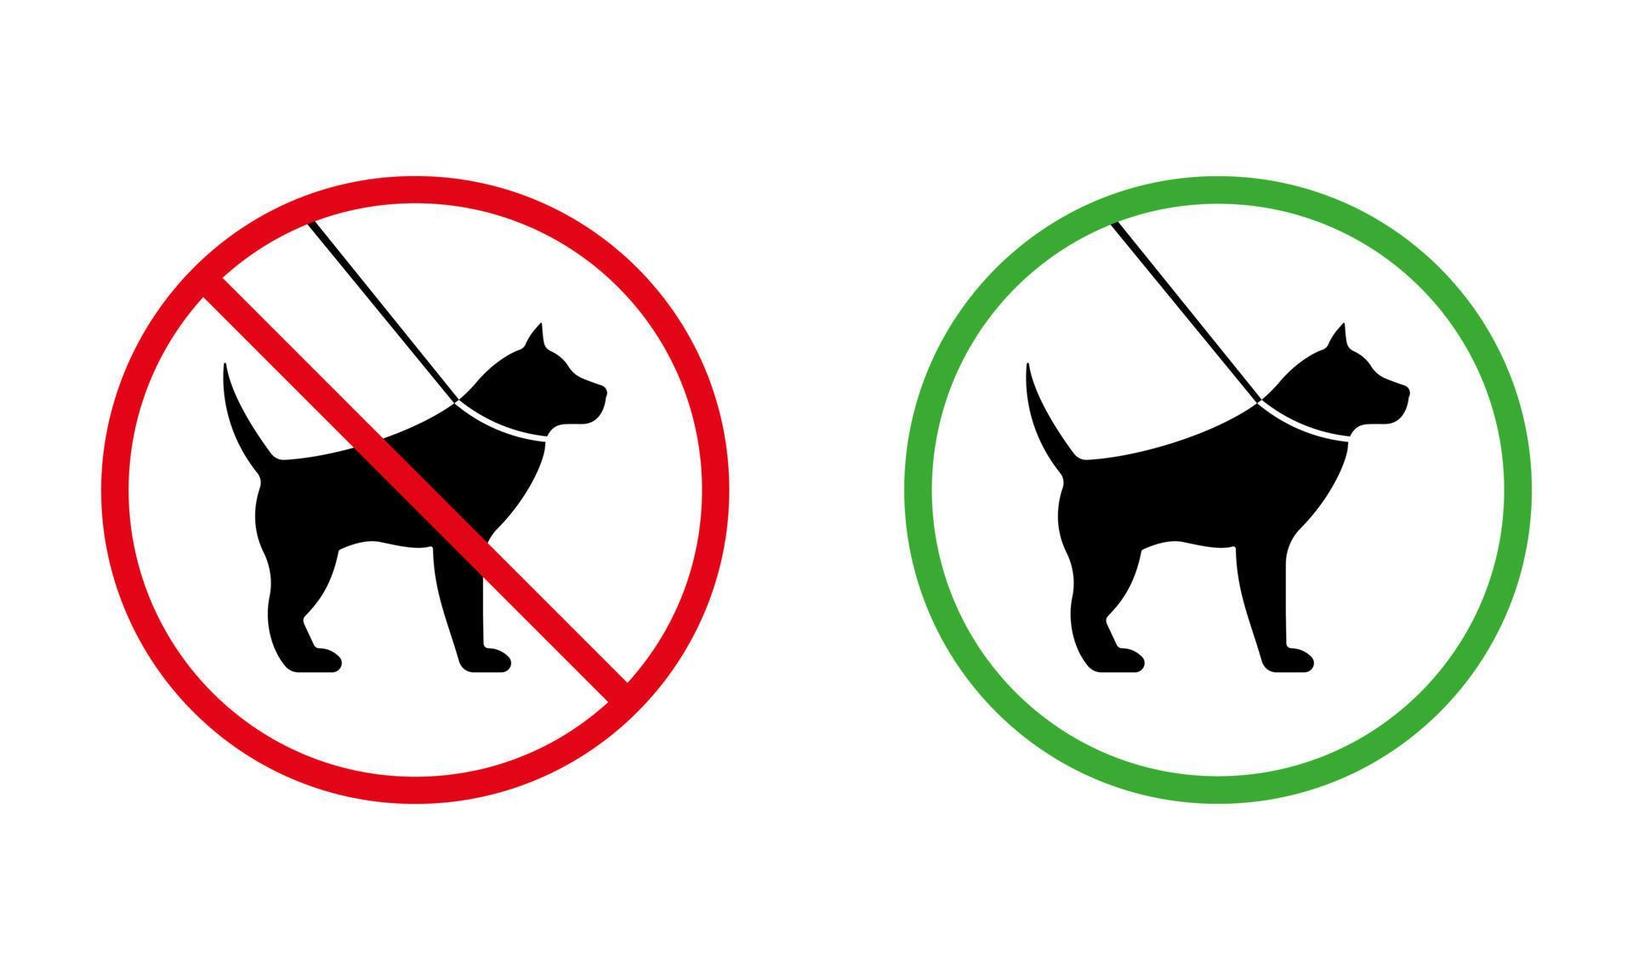 huisdier aan de lijn lopen zone verboden pictogram. verbod wandelen hond zwart silhouet pictogram. laat lopen dier rood symbool. toestemming om te wandelen huisdier wandelgebied groene cirkel teken. geïsoleerde vectorillustratie. vector